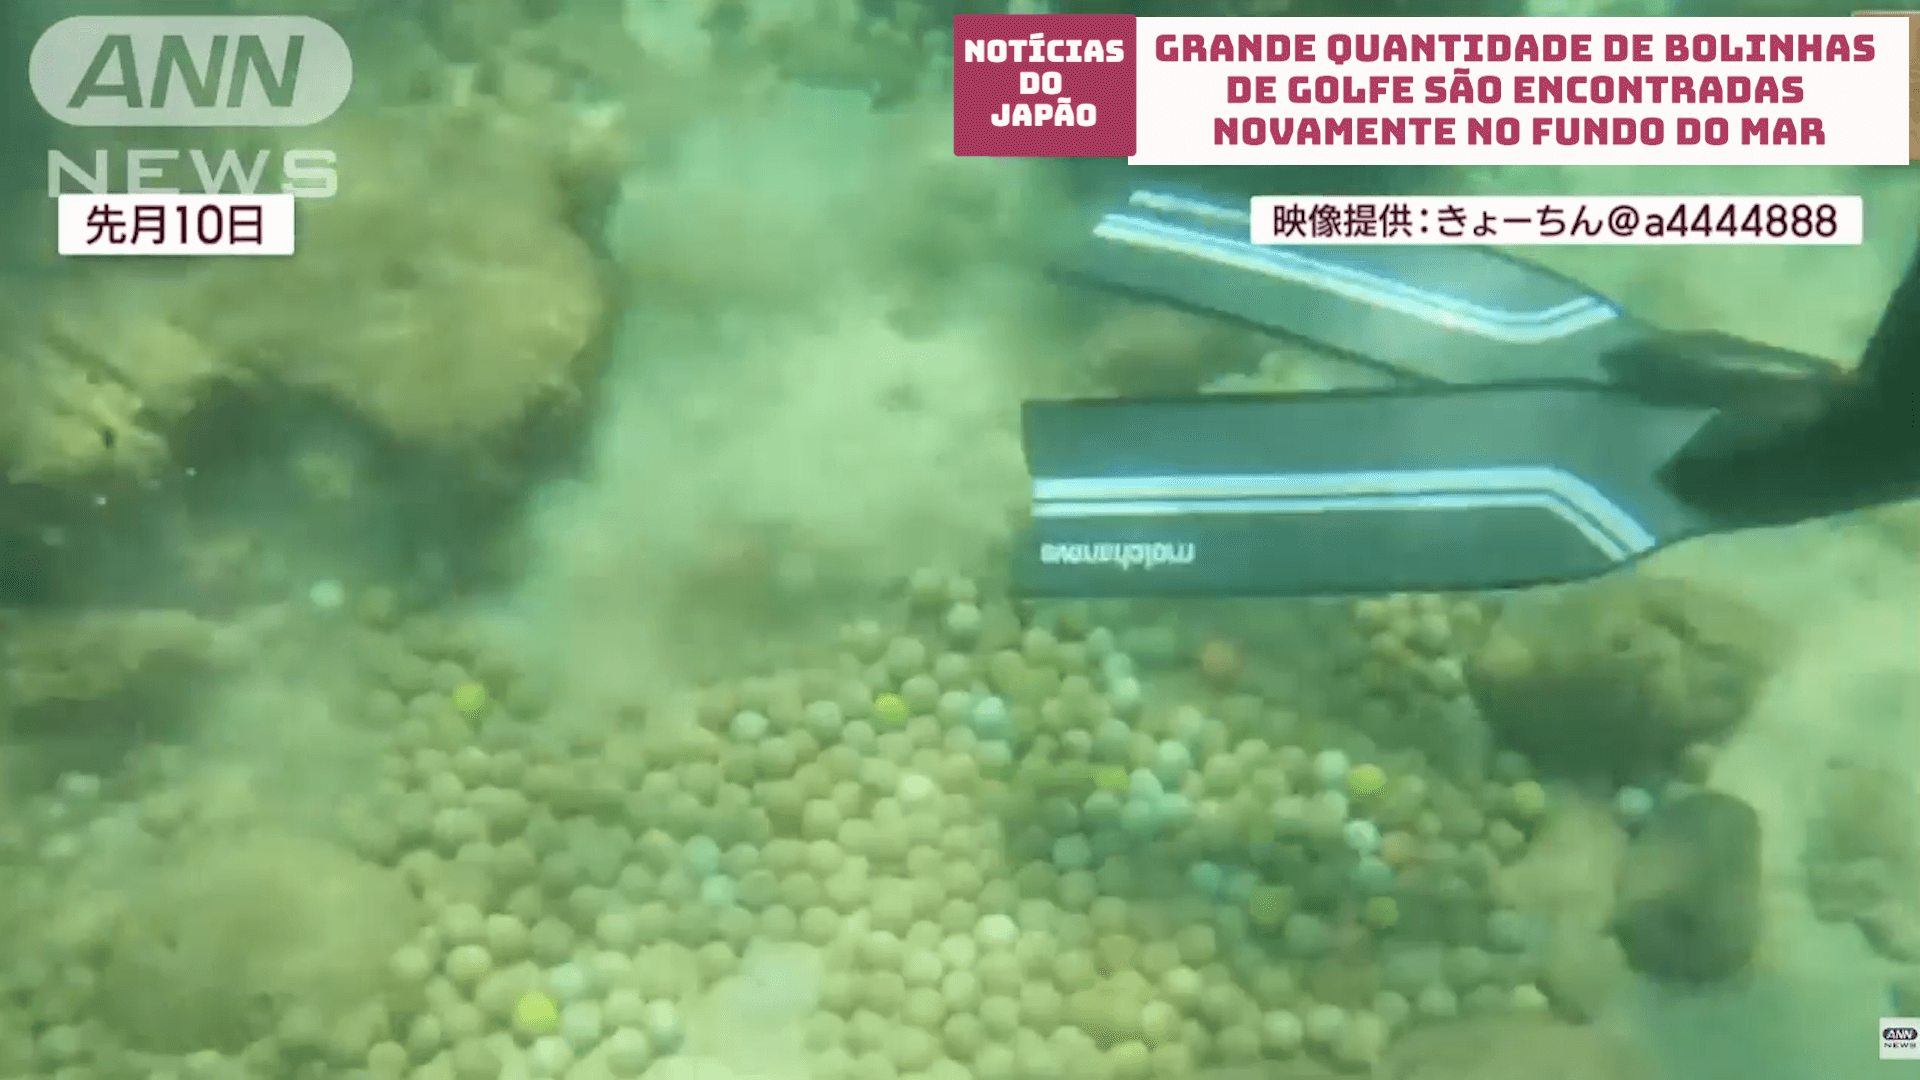 Grande quantidade de bolinhas de golfe são encontradas novamente no fundo do mar no Japão 